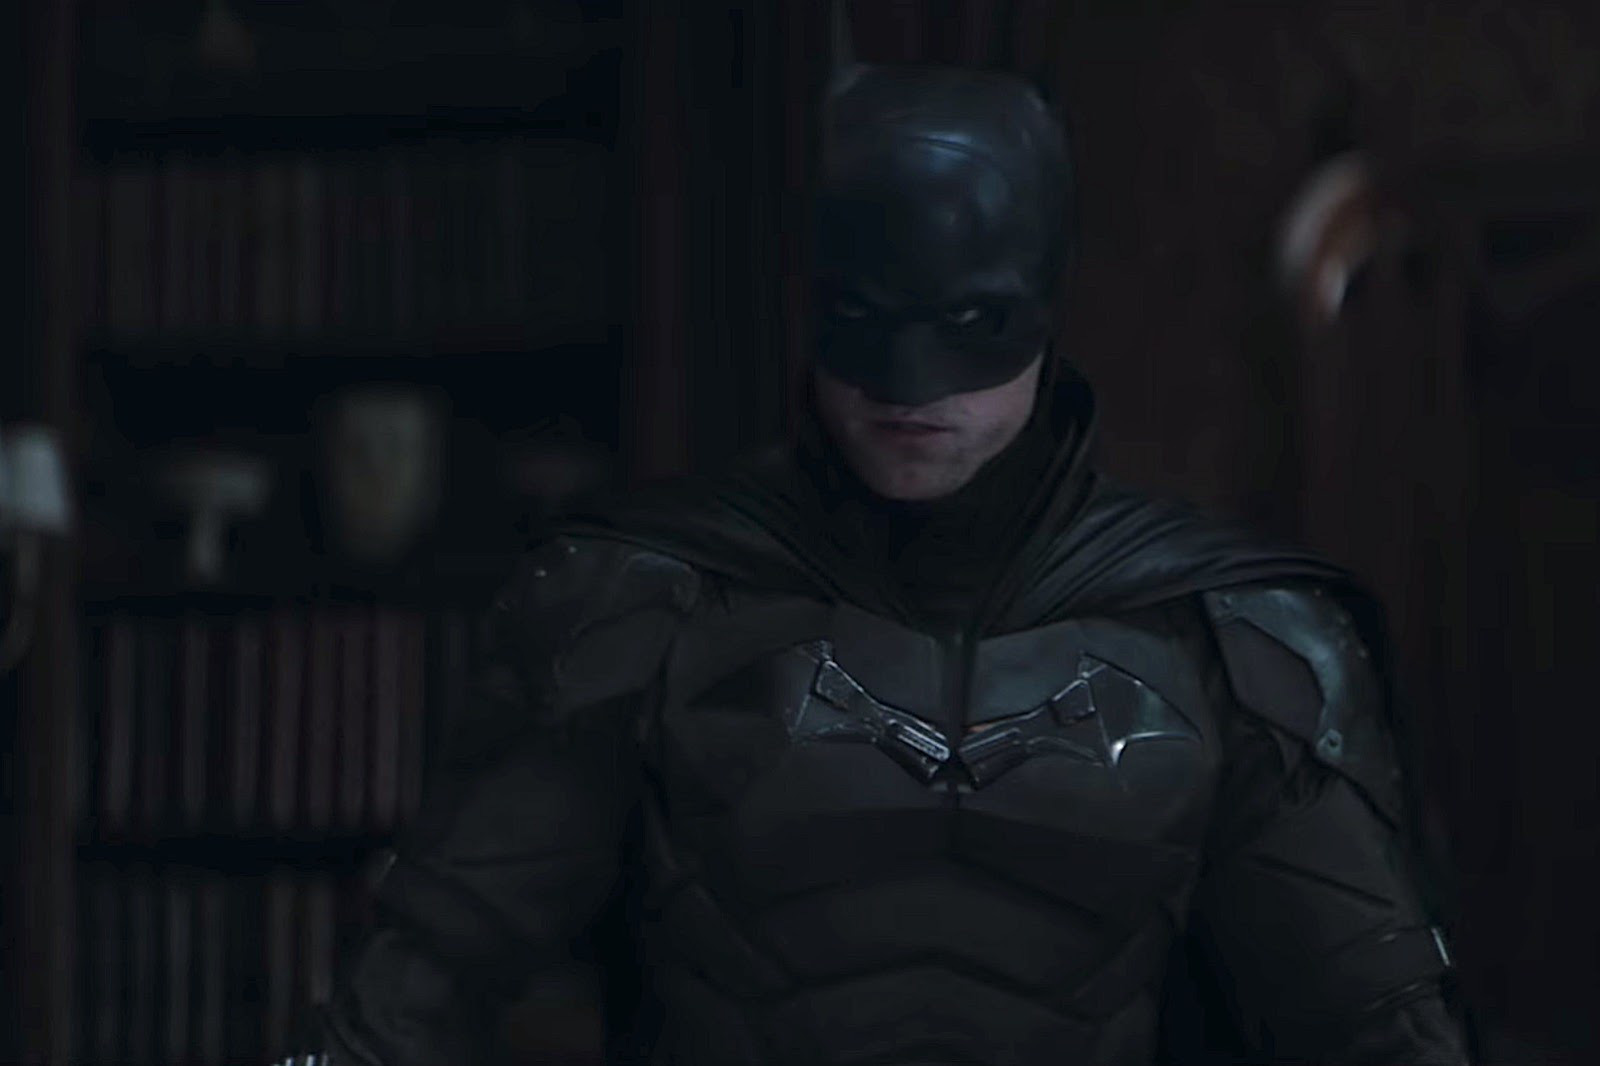 NÓNG: Robert Pattinson dương tính với Covid-19 khi quay The Batman - Ảnh 4.